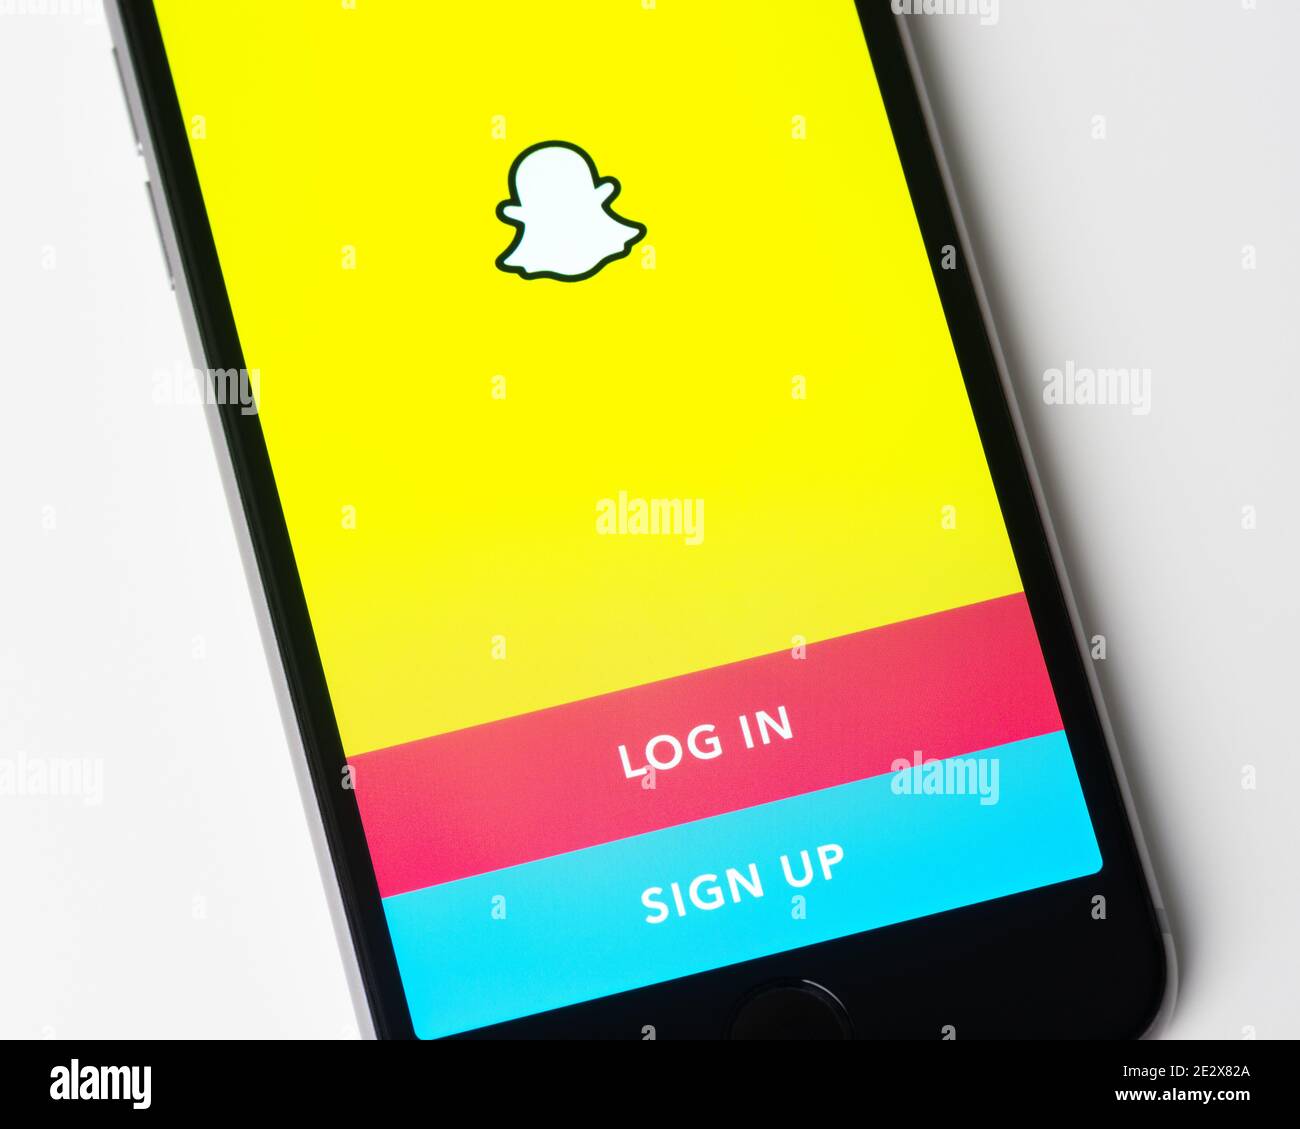 L'application Snapchat se connecte et s'inscrit sur l'écran d'Apple iPhone. Snapchat est une application de messagerie multimédia développée par Snap Inc Banque D'Images